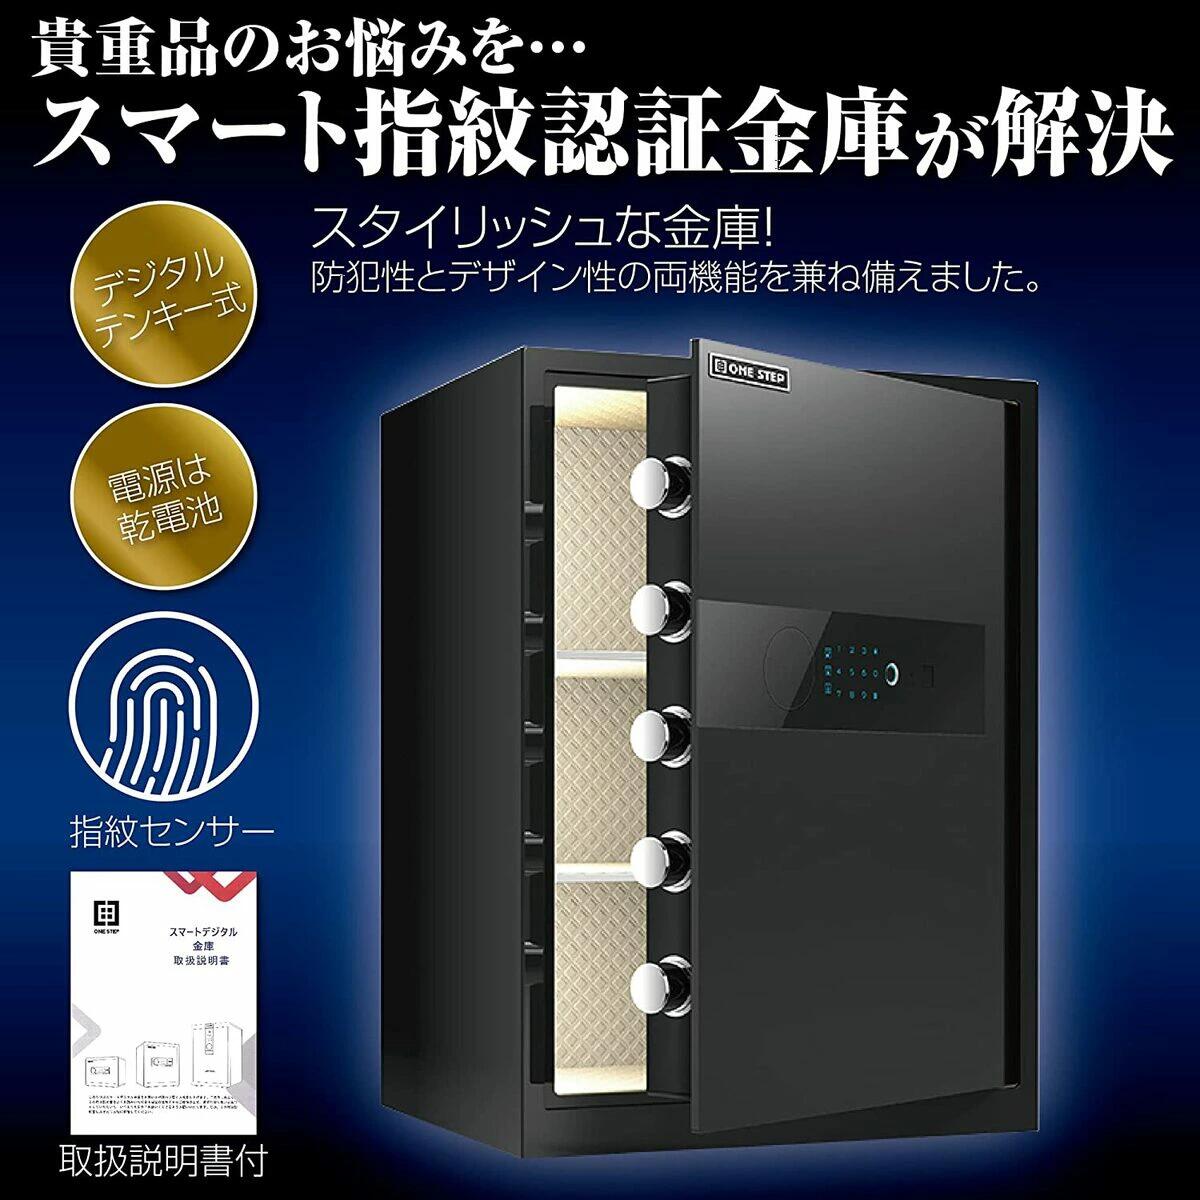 【楽天市場】金庫 電子金庫 60cm 白 タッチパネル 指紋認証